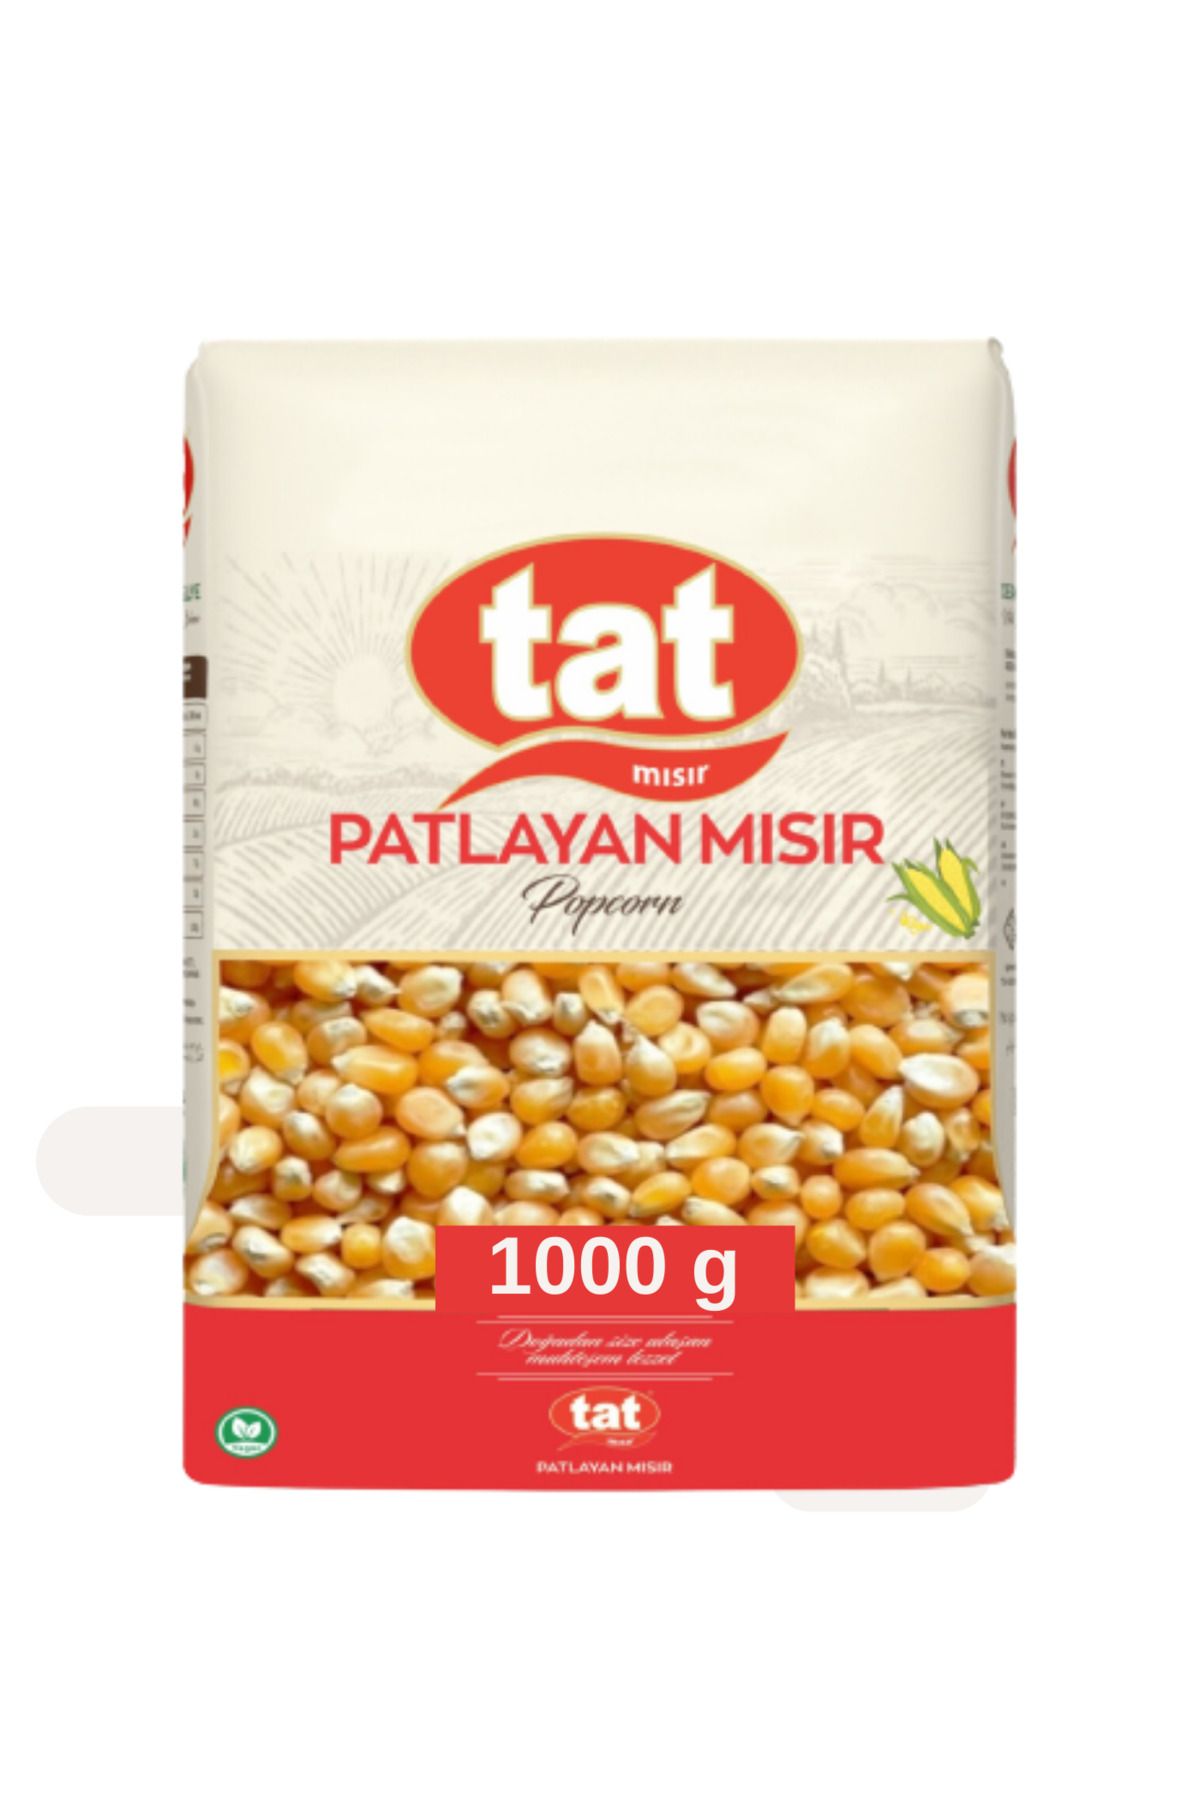 Tat Patlayan Mısır Popcorn 1000 g